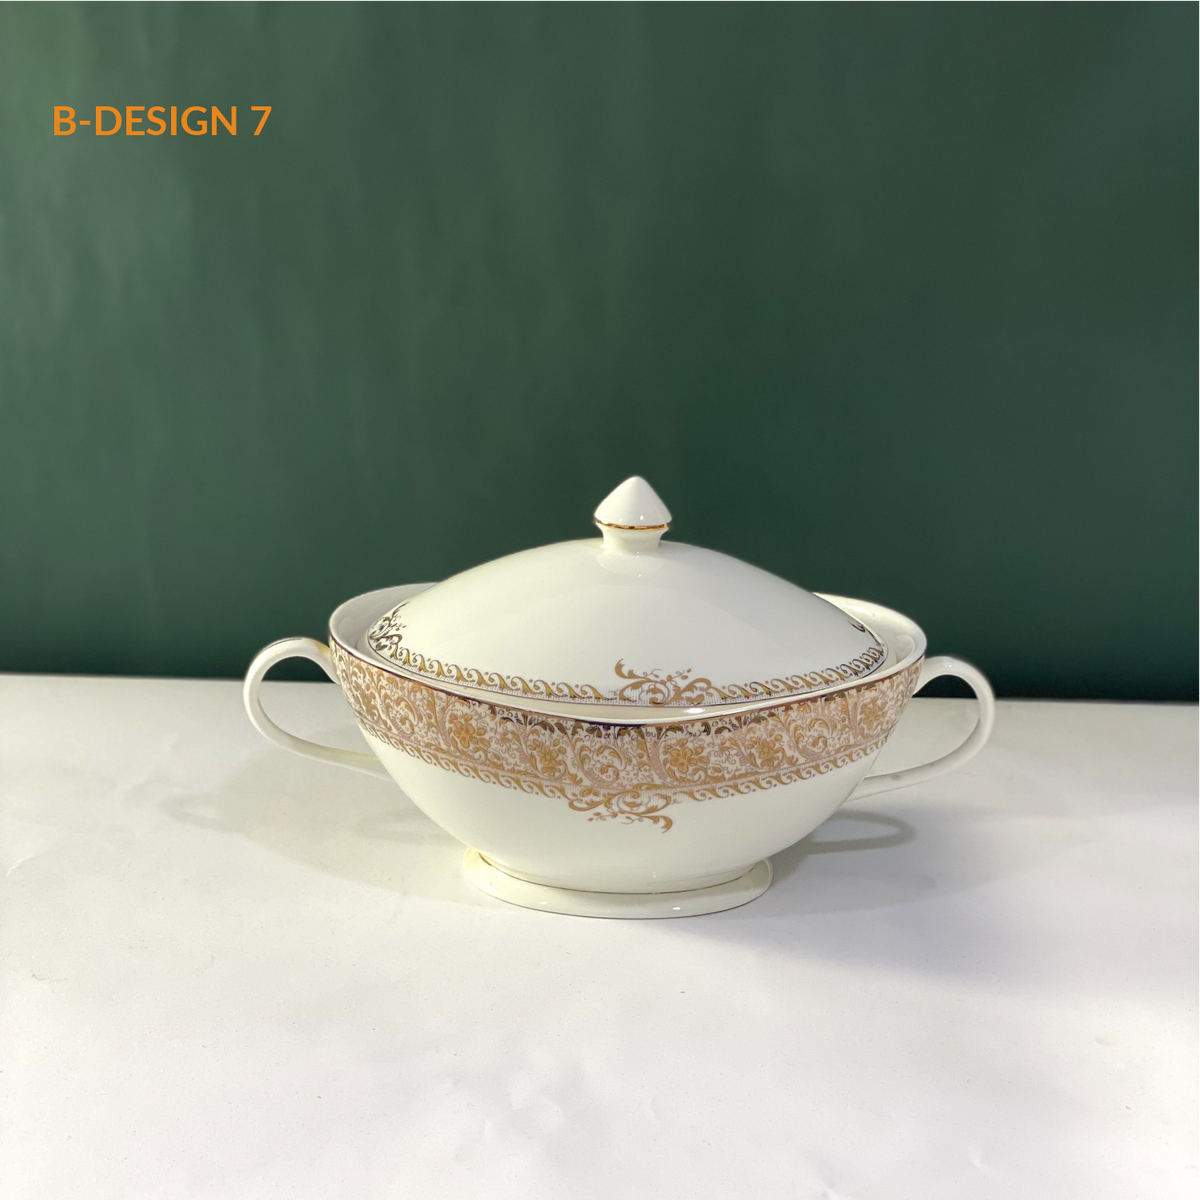 Ceramic Porcelain Serving Bowl with Lid - Design B